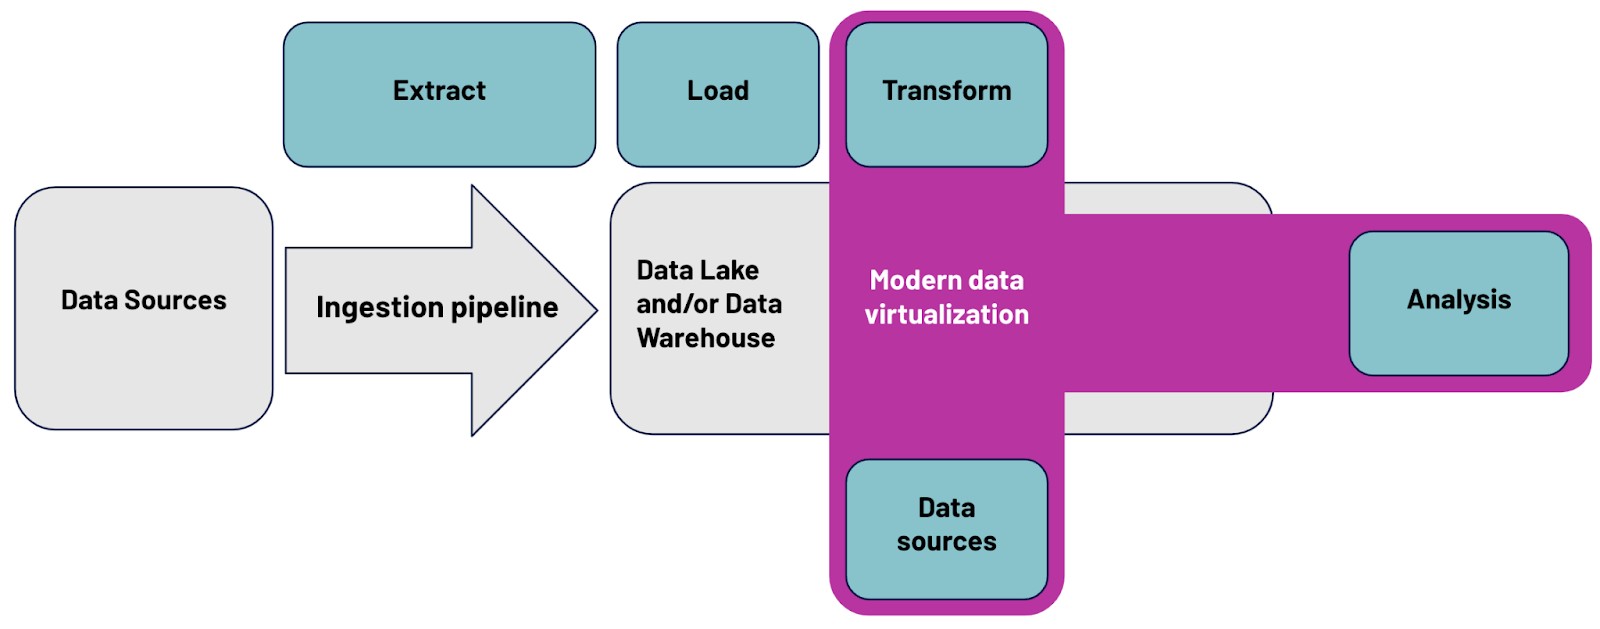 Modern Data Virtualizations